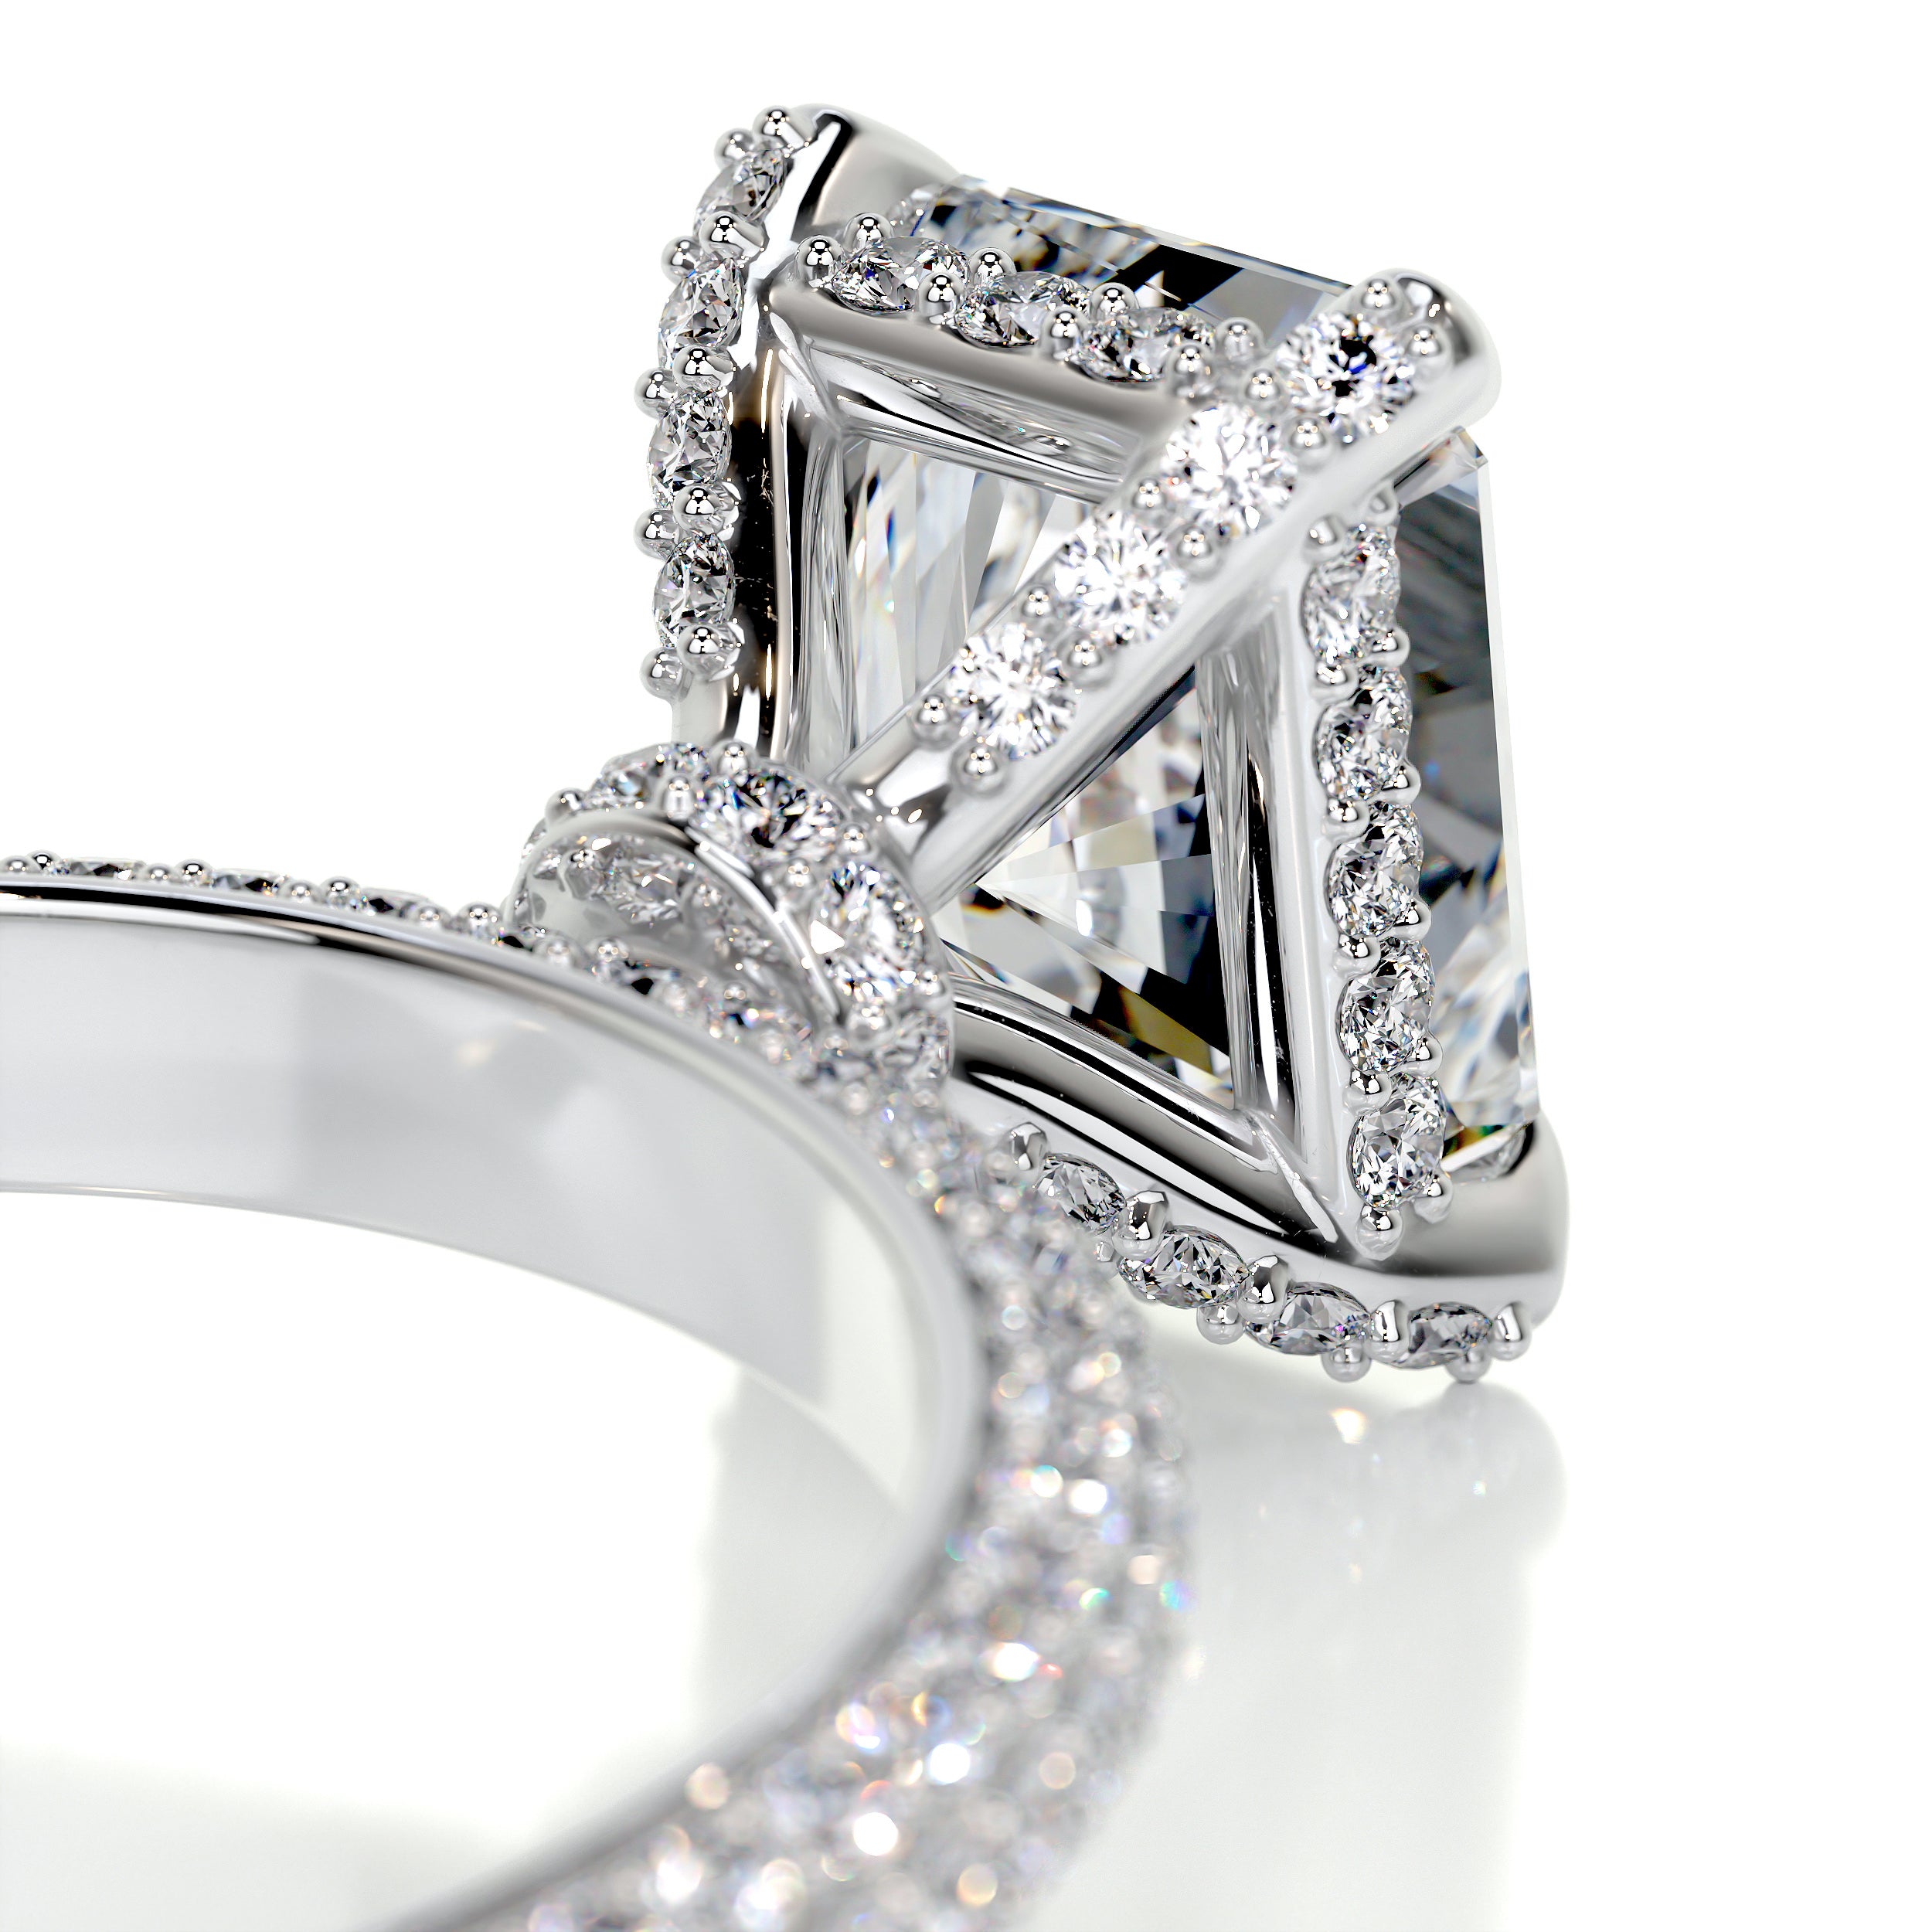 Milly Diamond Engagement Ring   (2.25 Carat) -18K White Gold